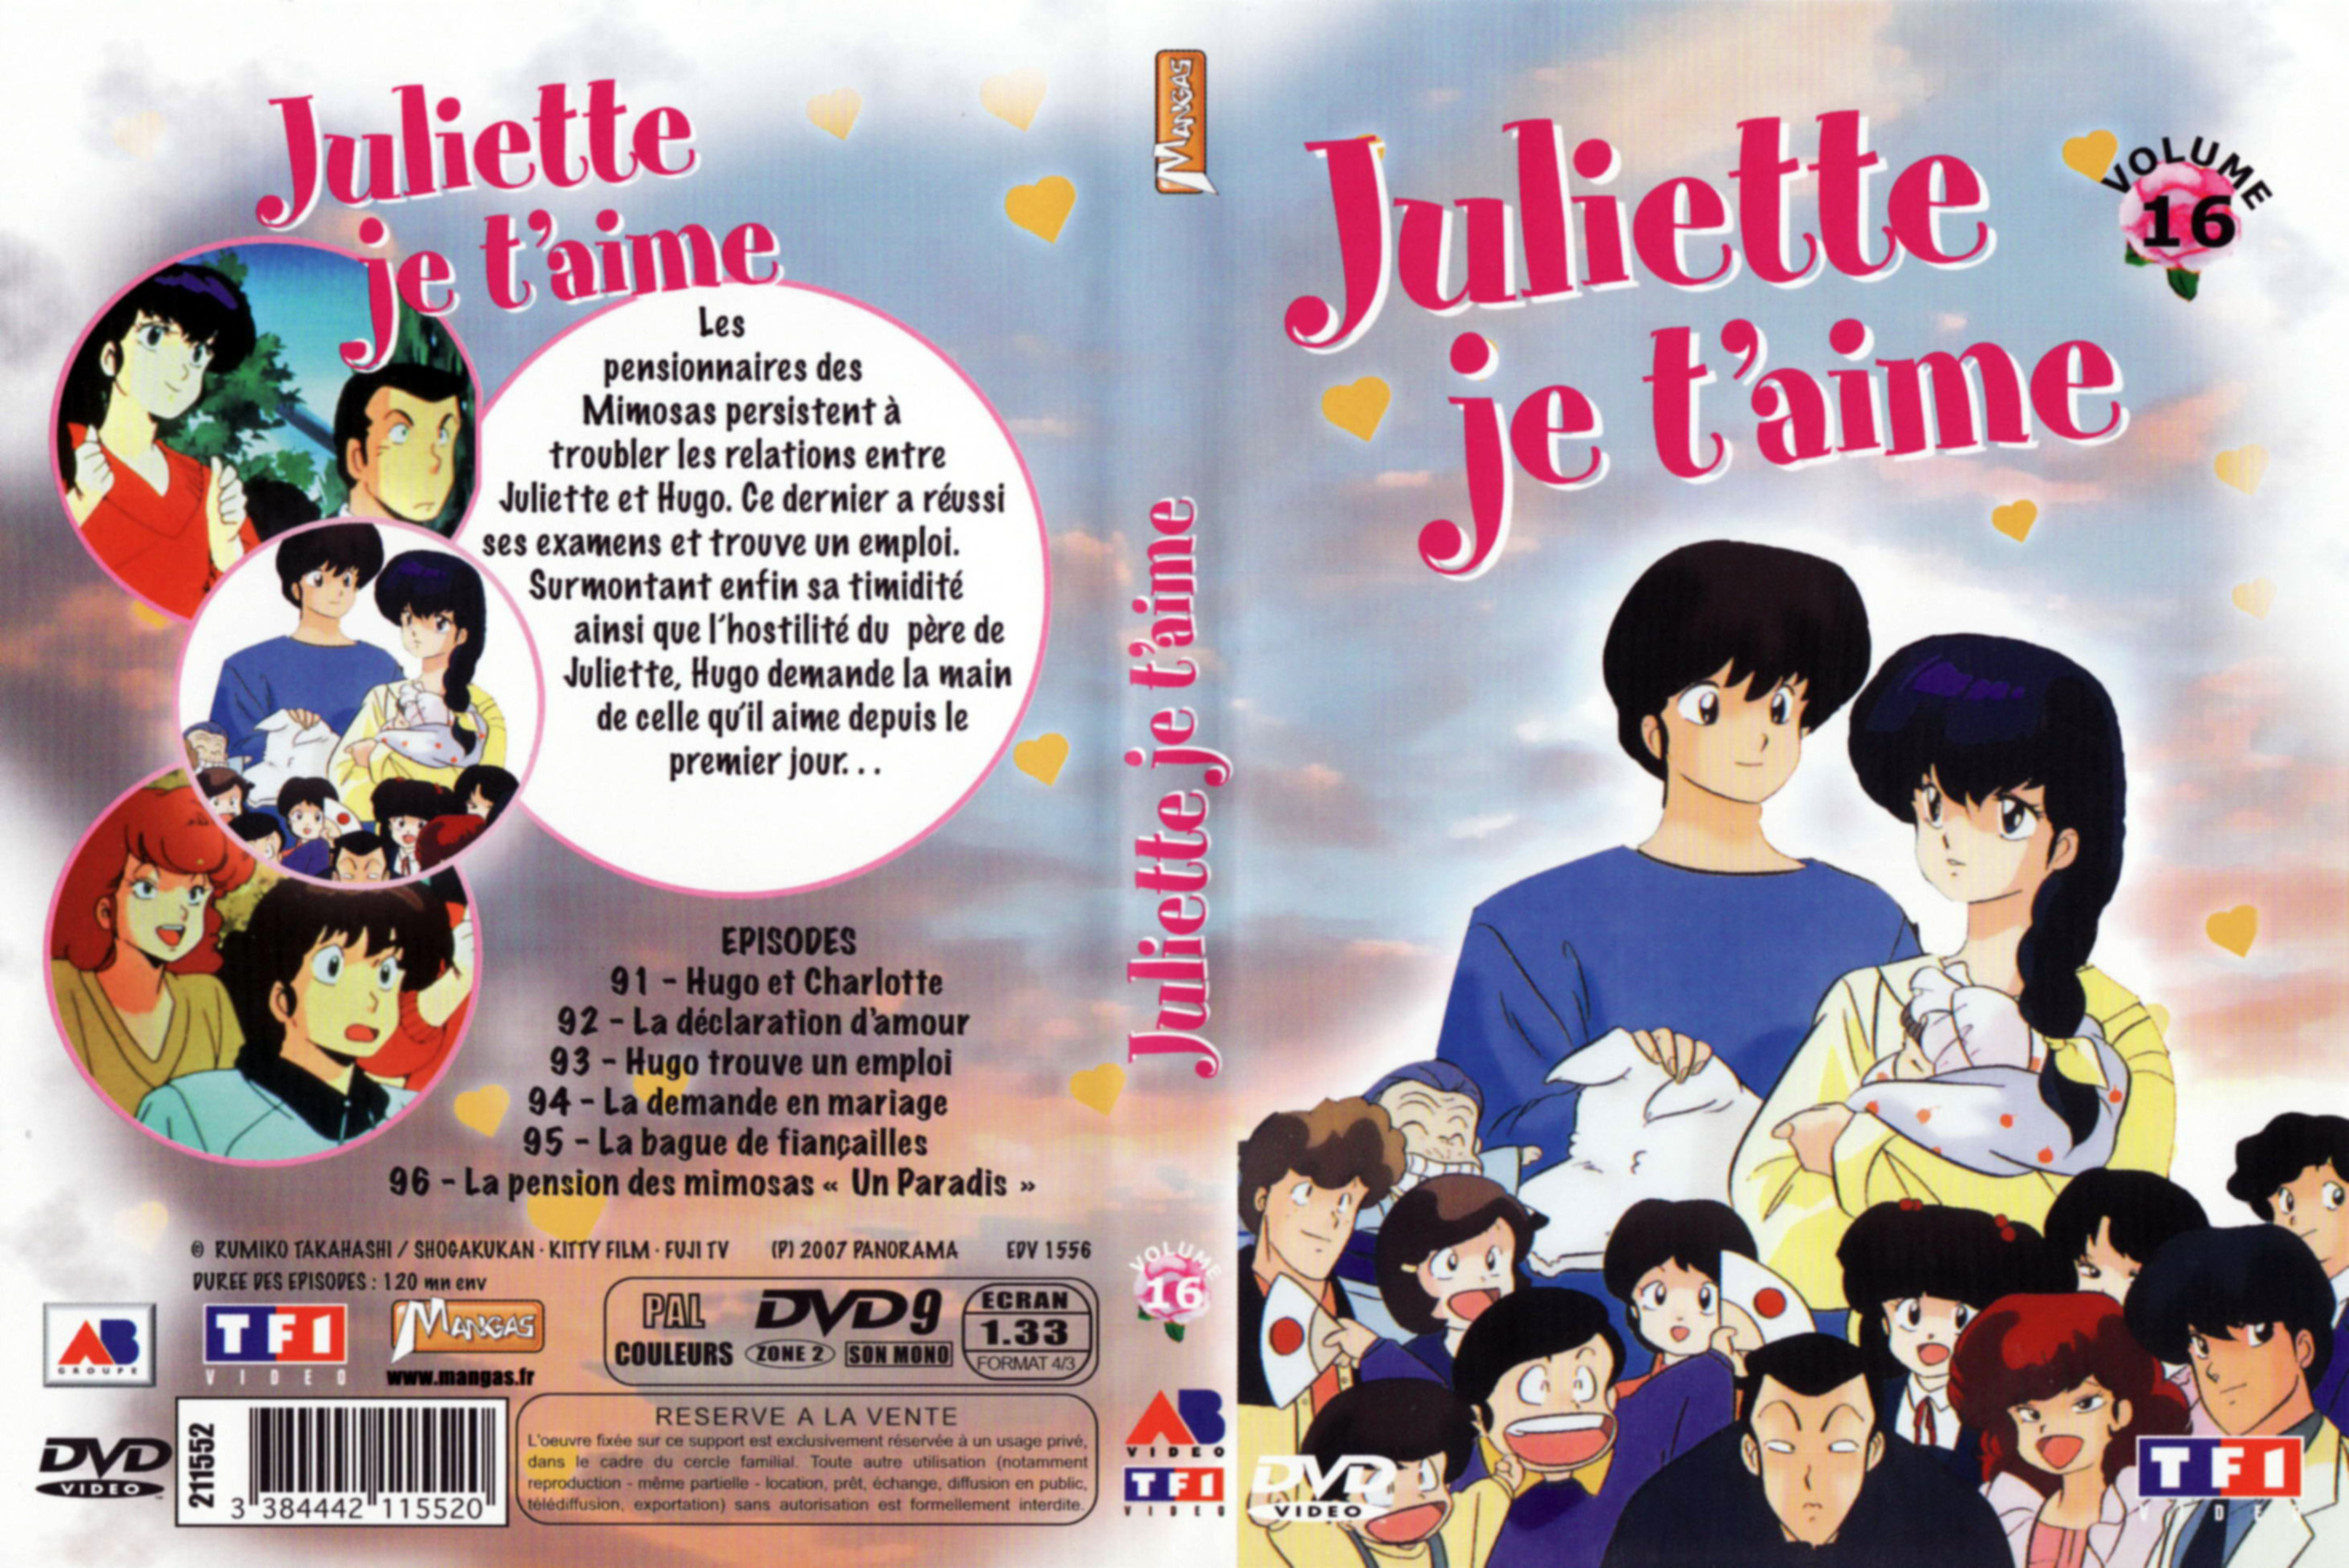 Jaquette DVD Juliette je t aime vol 16